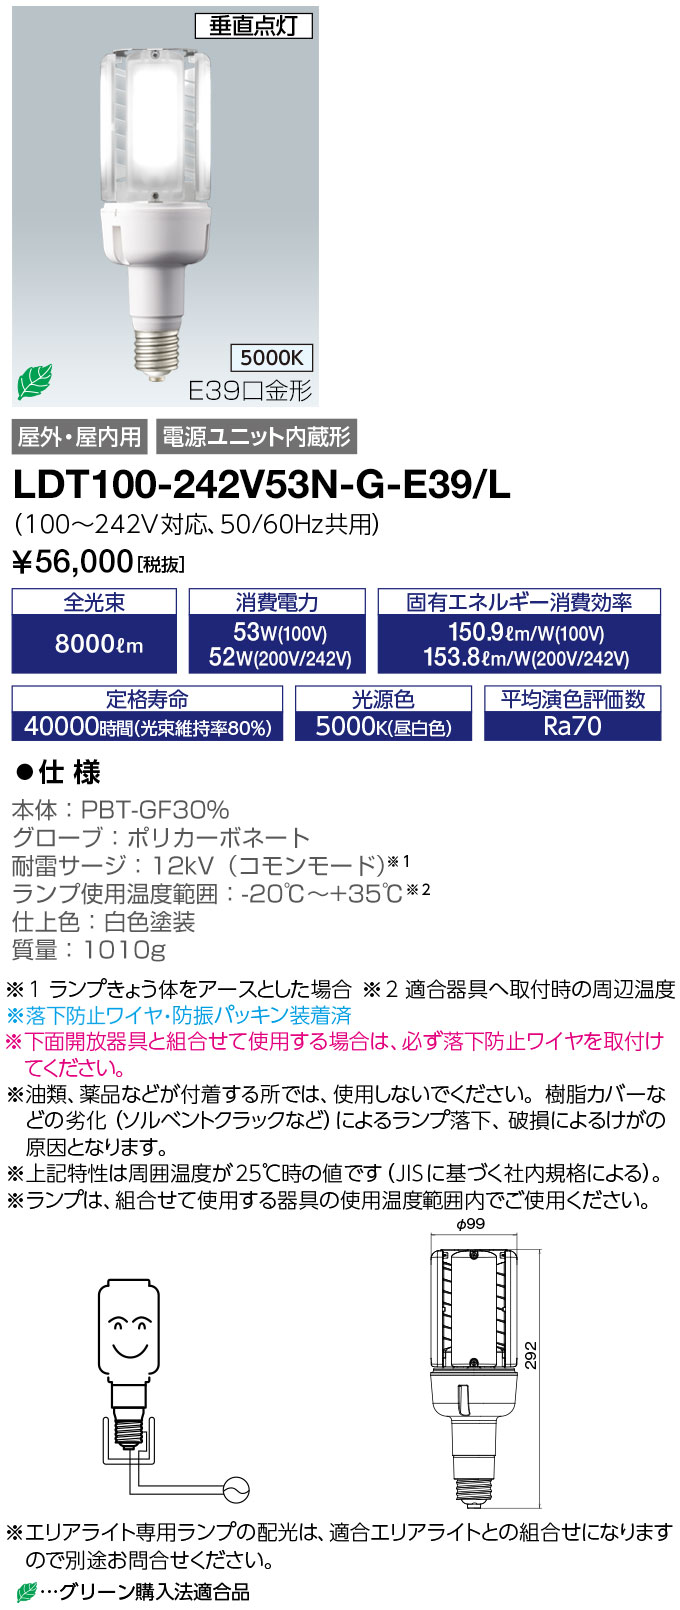 楽天市場 岩崎電気 LDT100-242V53N-G-E39 レディオックＬＥＤライトバルブK 昼白色 E39口金 電源ユニット内蔵形 